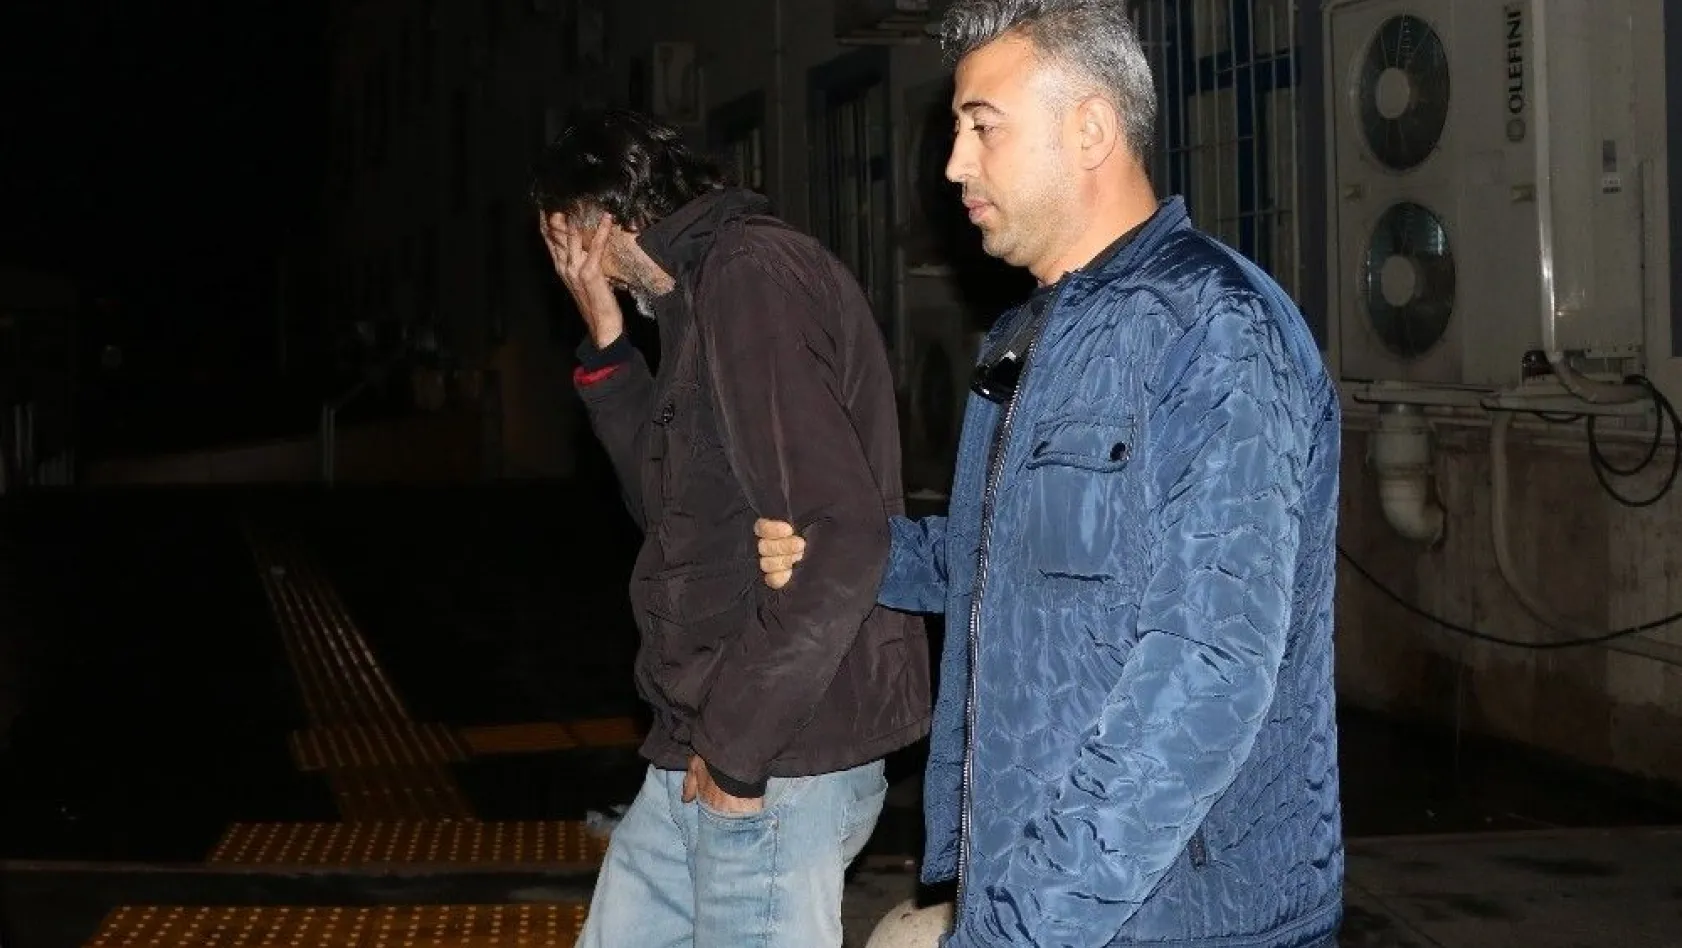 Kahramanmaraş'ta su sayaçlarını çalan hırsız tutuklandı
